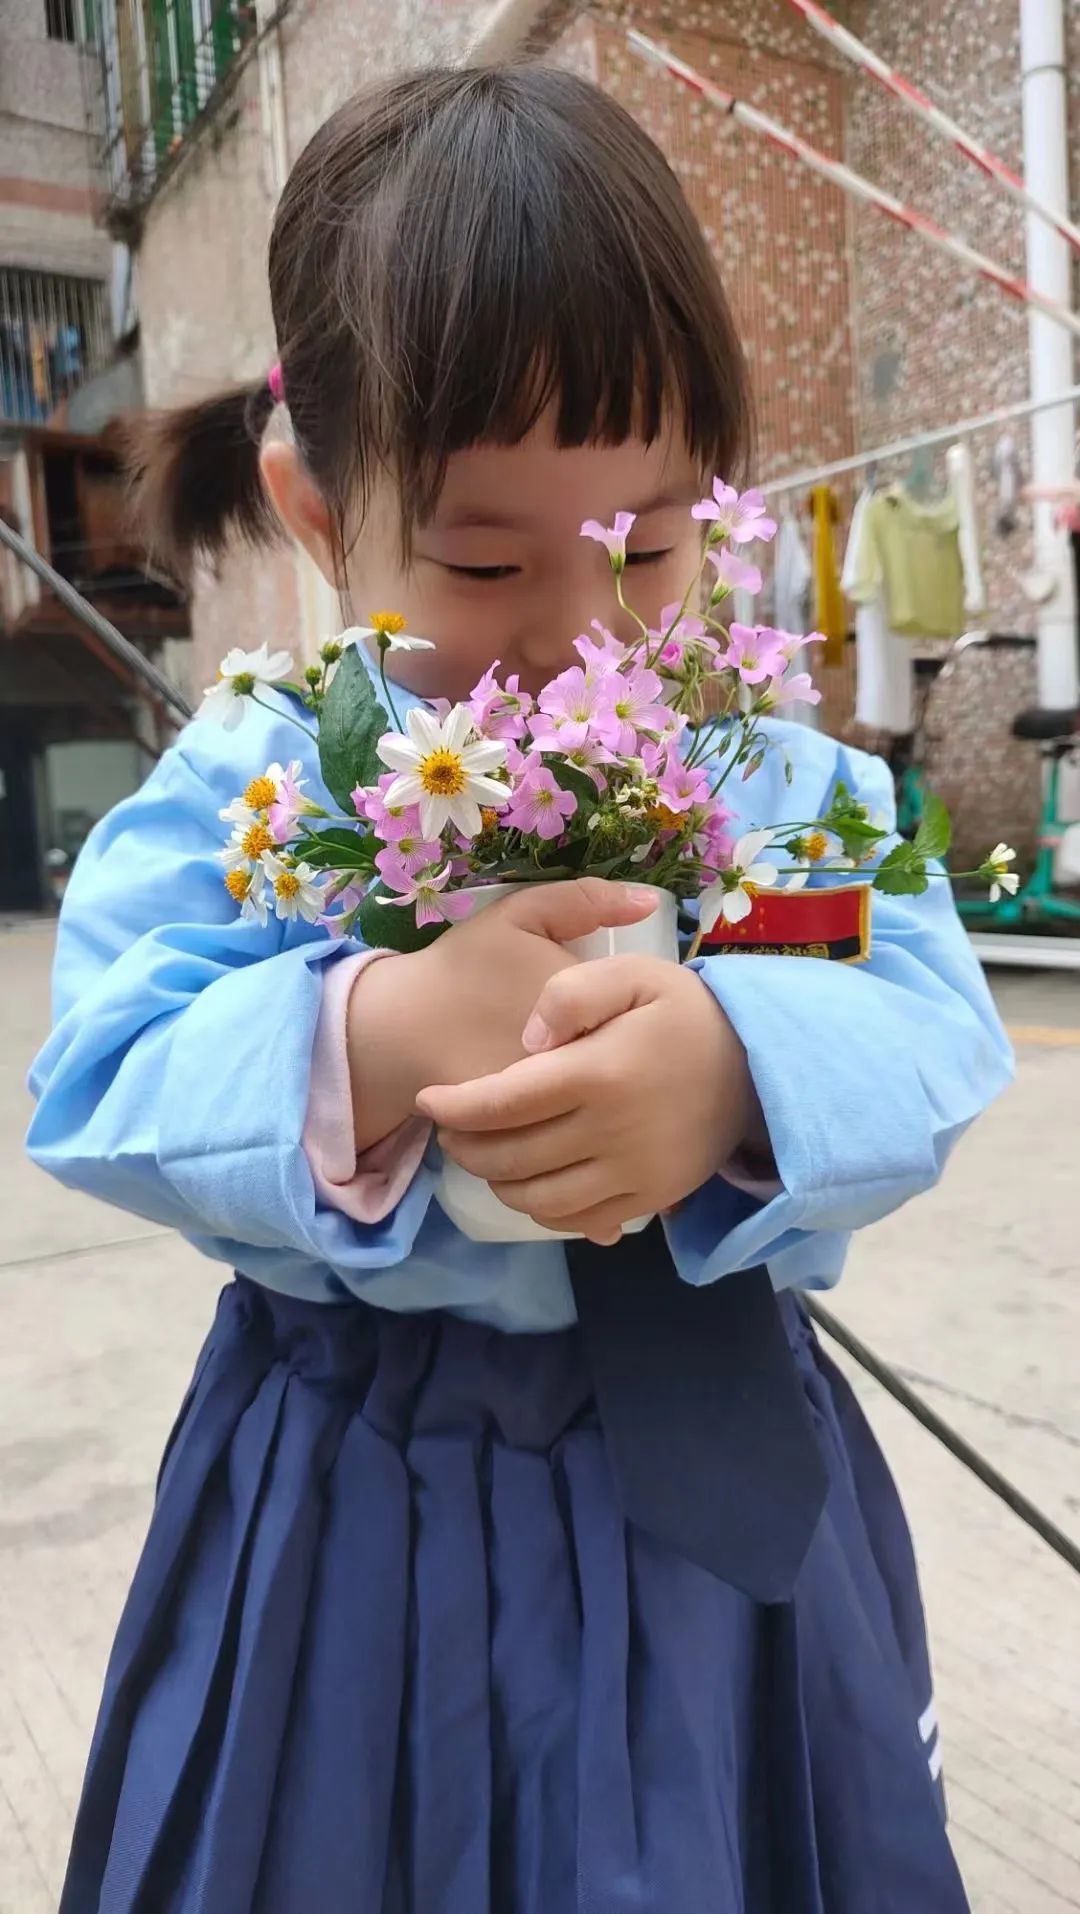 ▲ 范明月女儿抱着摘来的野花。图 / 受访者提供